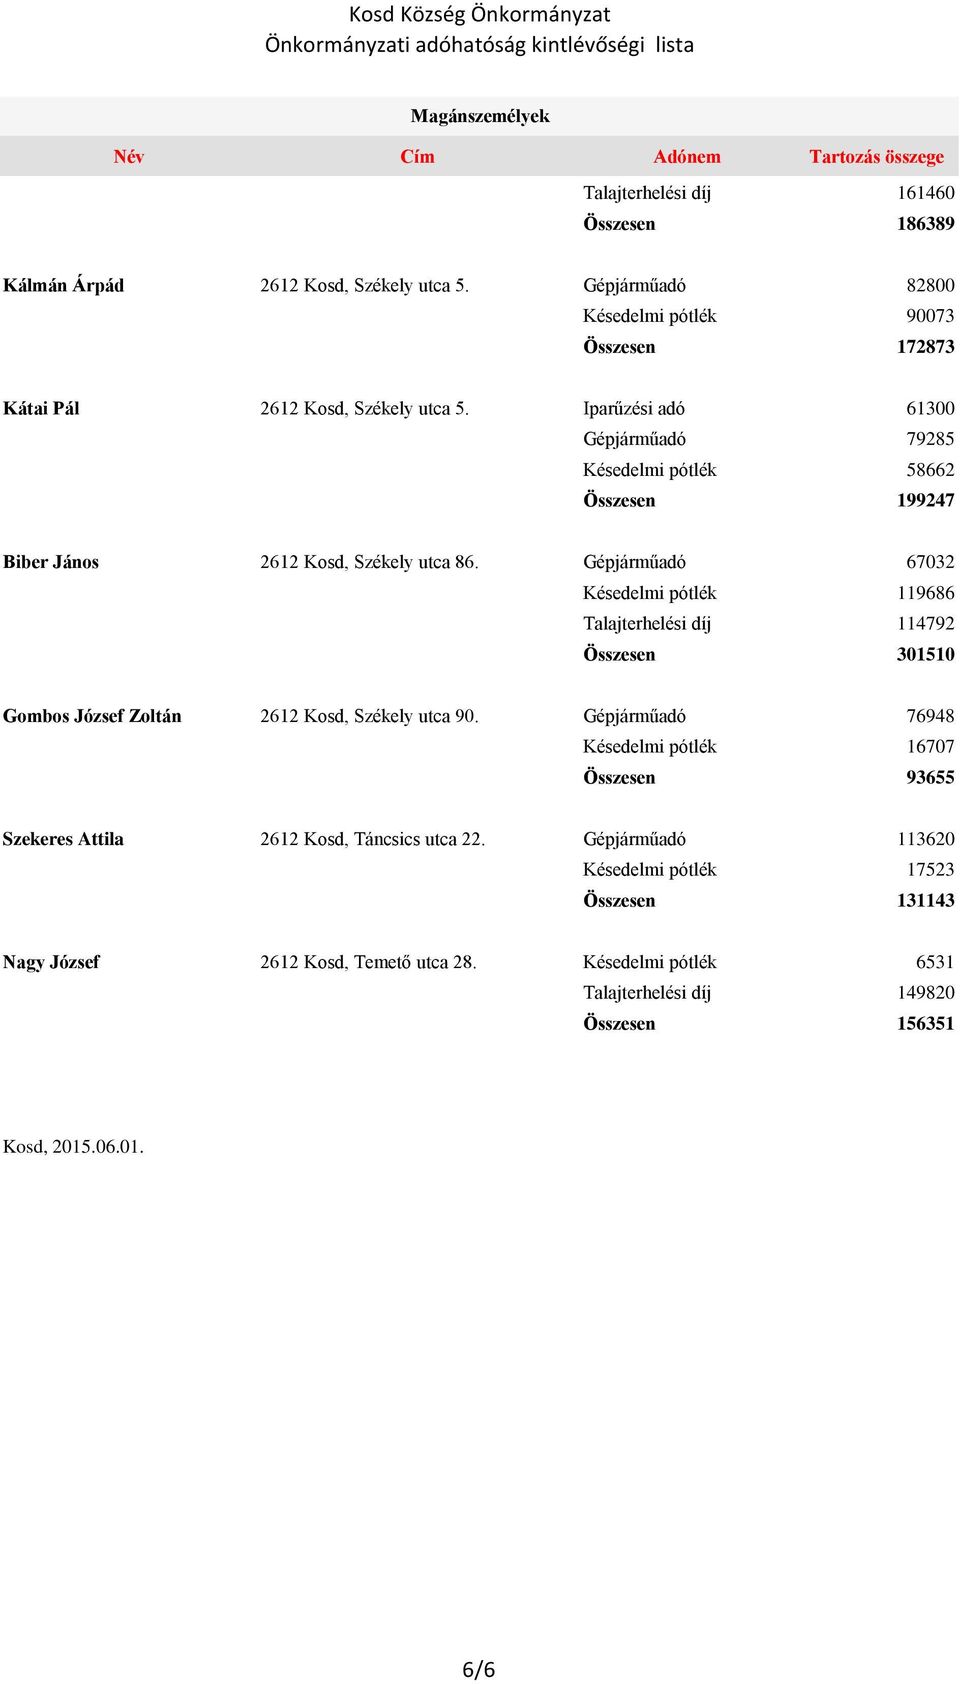 Kosd Község Önkormányzat Önkormányzati adóhatóság kintlévőségi lista - PDF  Ingyenes letöltés